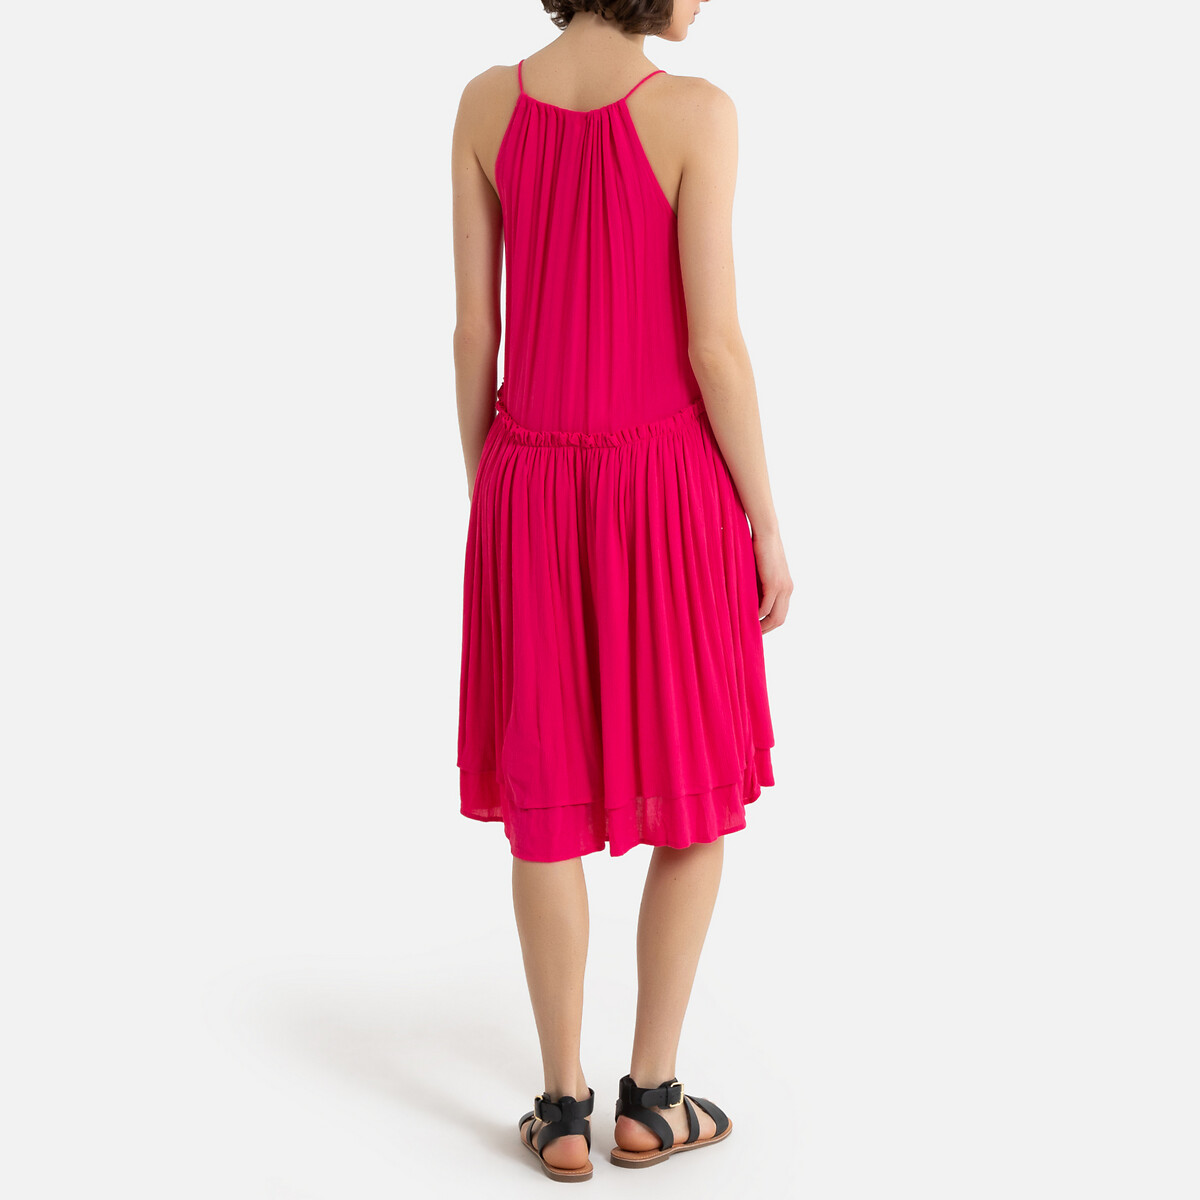 Платье La Redoute Короткое с тонкими бретелями 38 (FR) - 44 (RUS) розовый, размер 38 (FR) - 44 (RUS) Короткое с тонкими бретелями 38 (FR) - 44 (RUS) розовый - фото 4